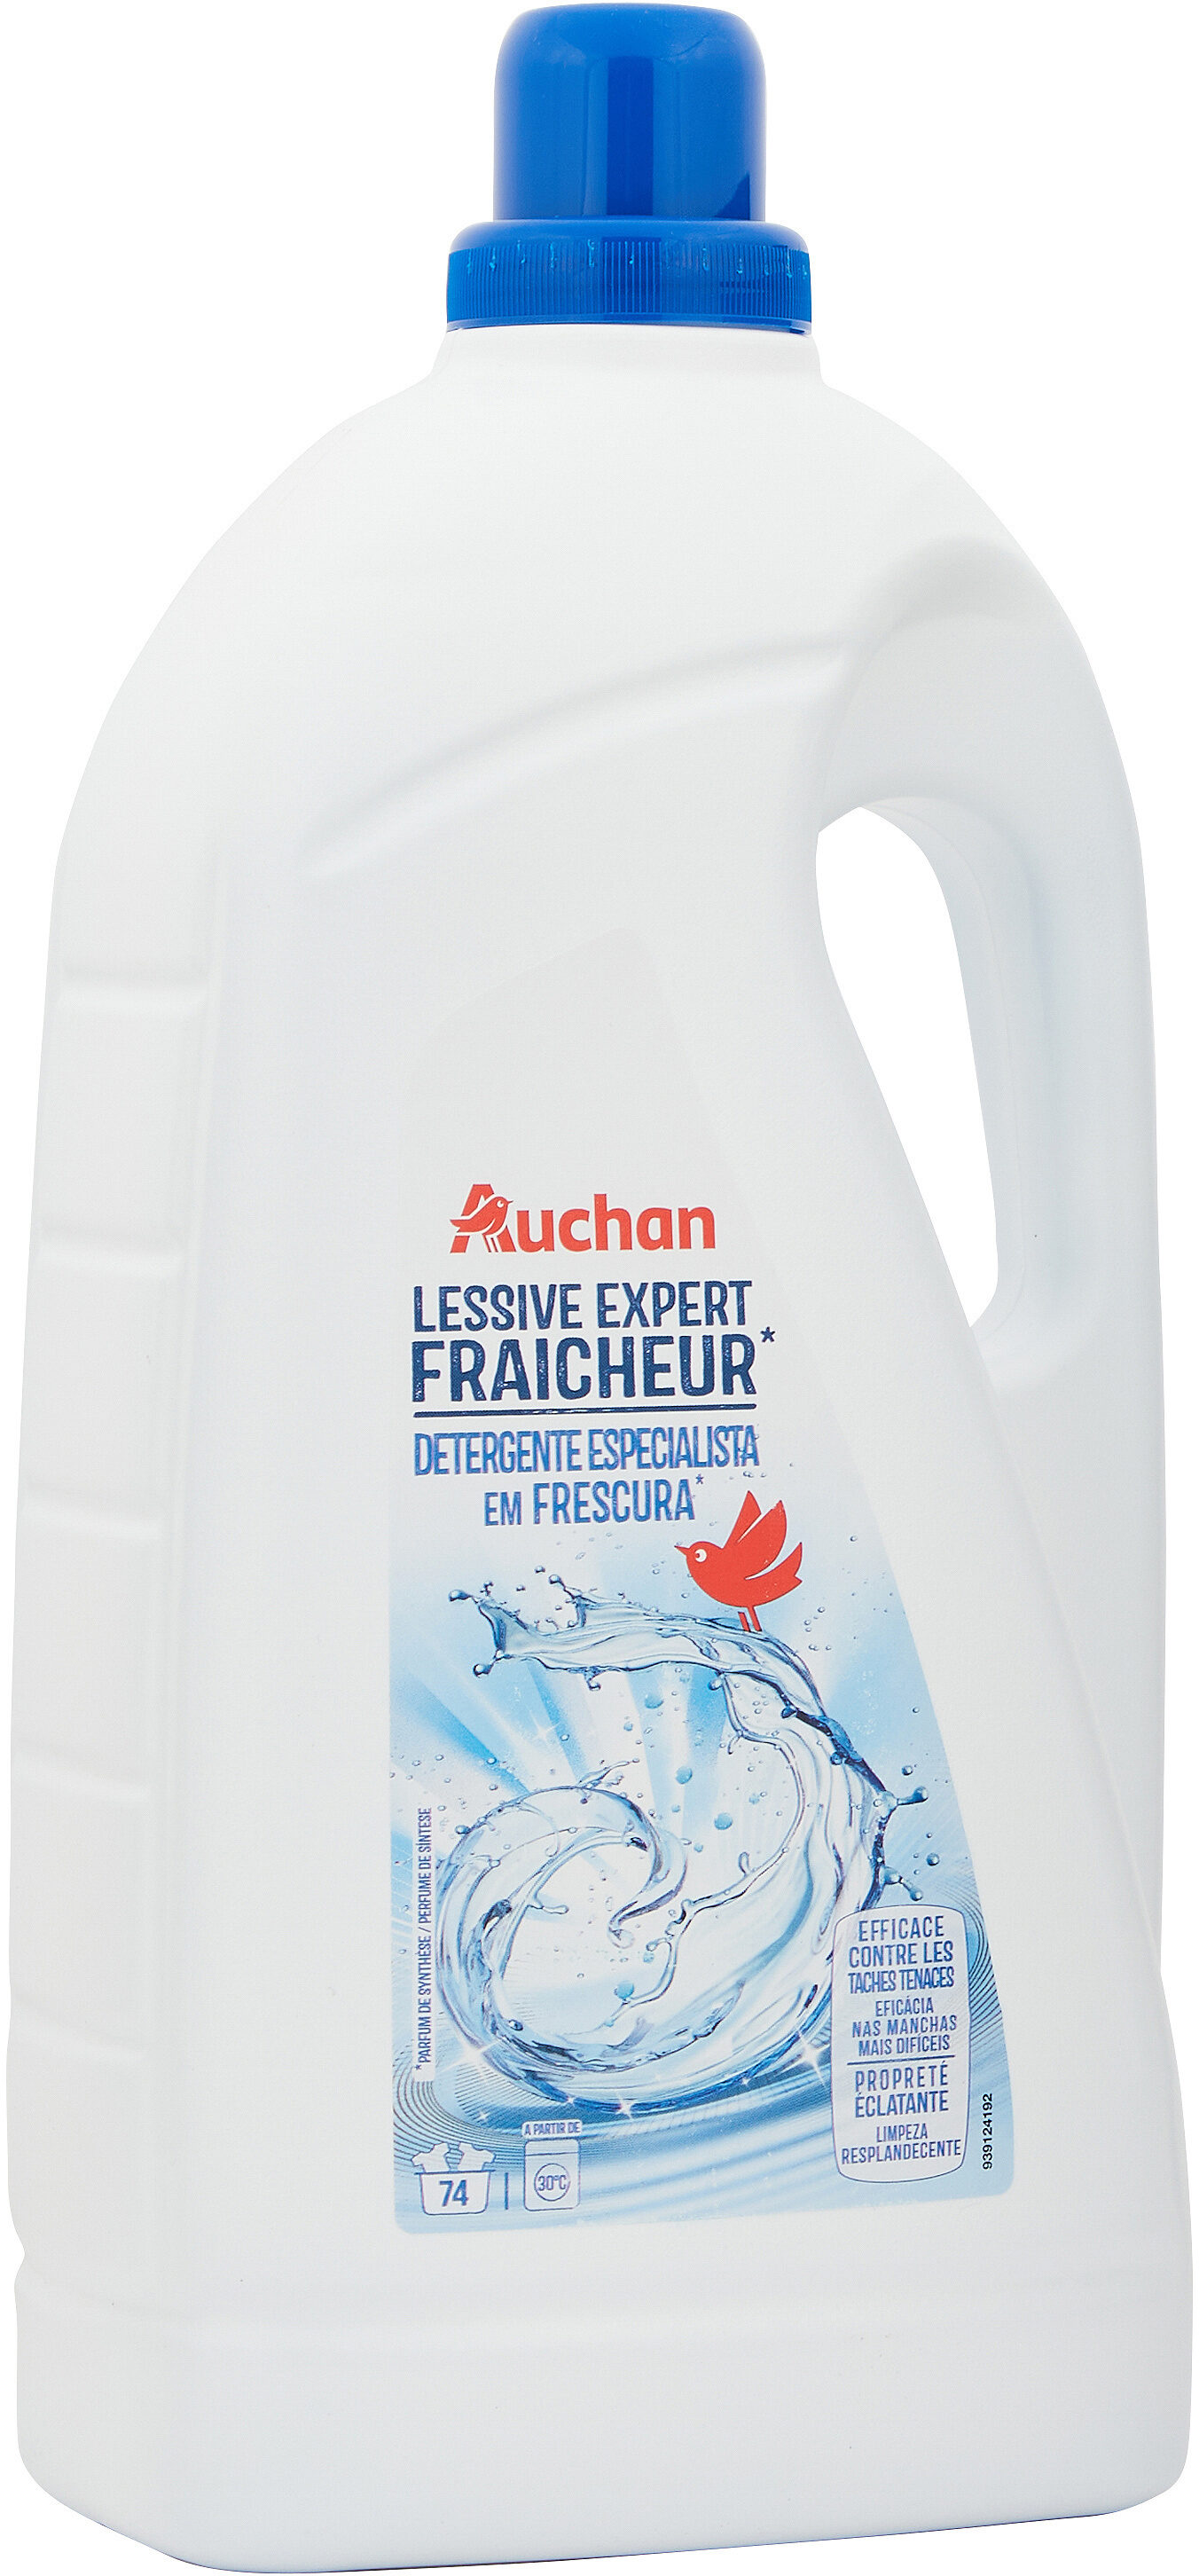 Lessive liquide Expert Fraîcheur - Product - fr